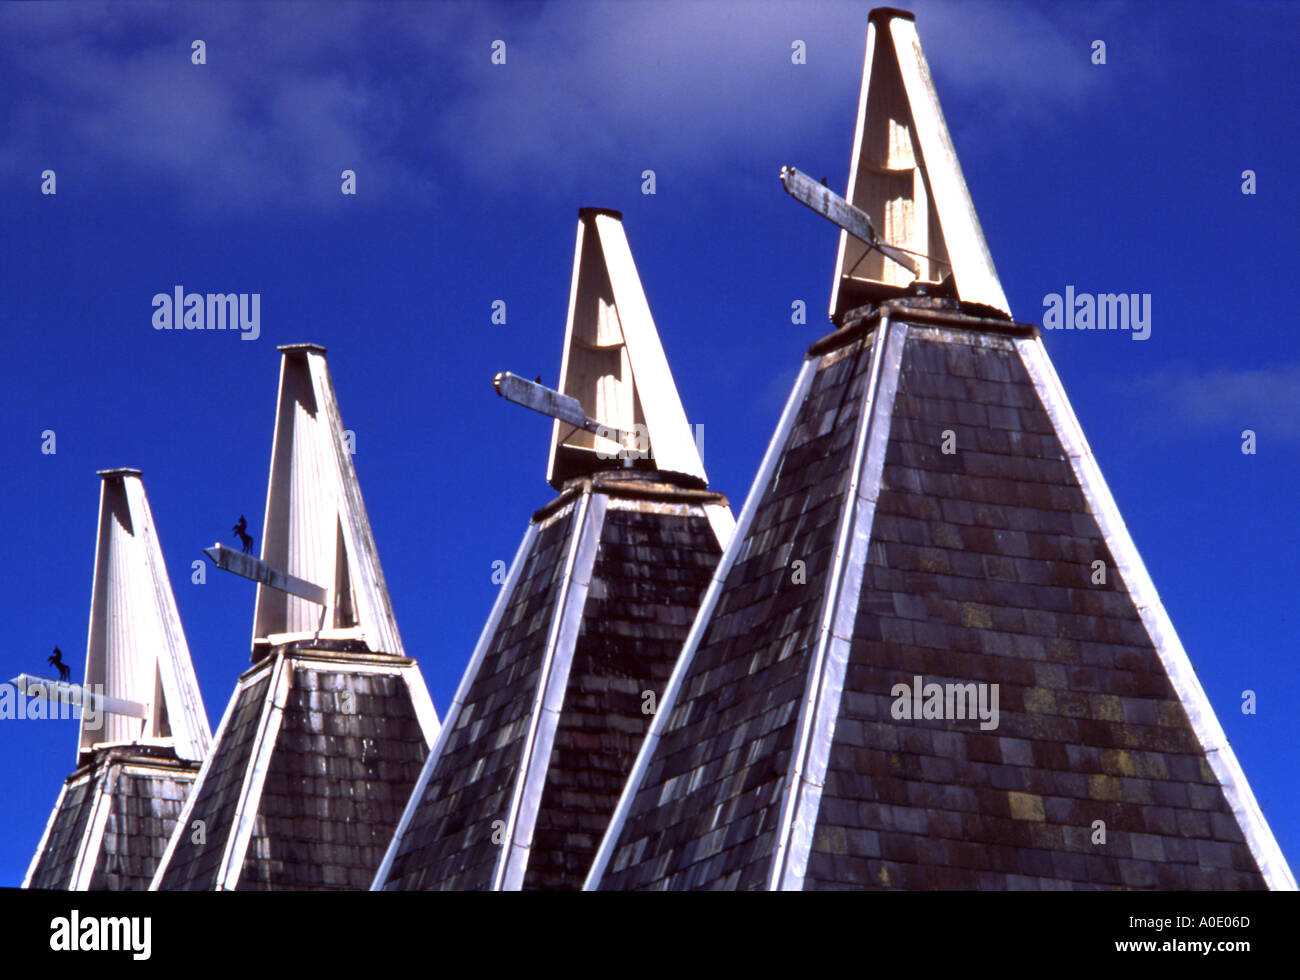 Reihe von vier Oast Häuser gegen blauen Himmel Stockfoto